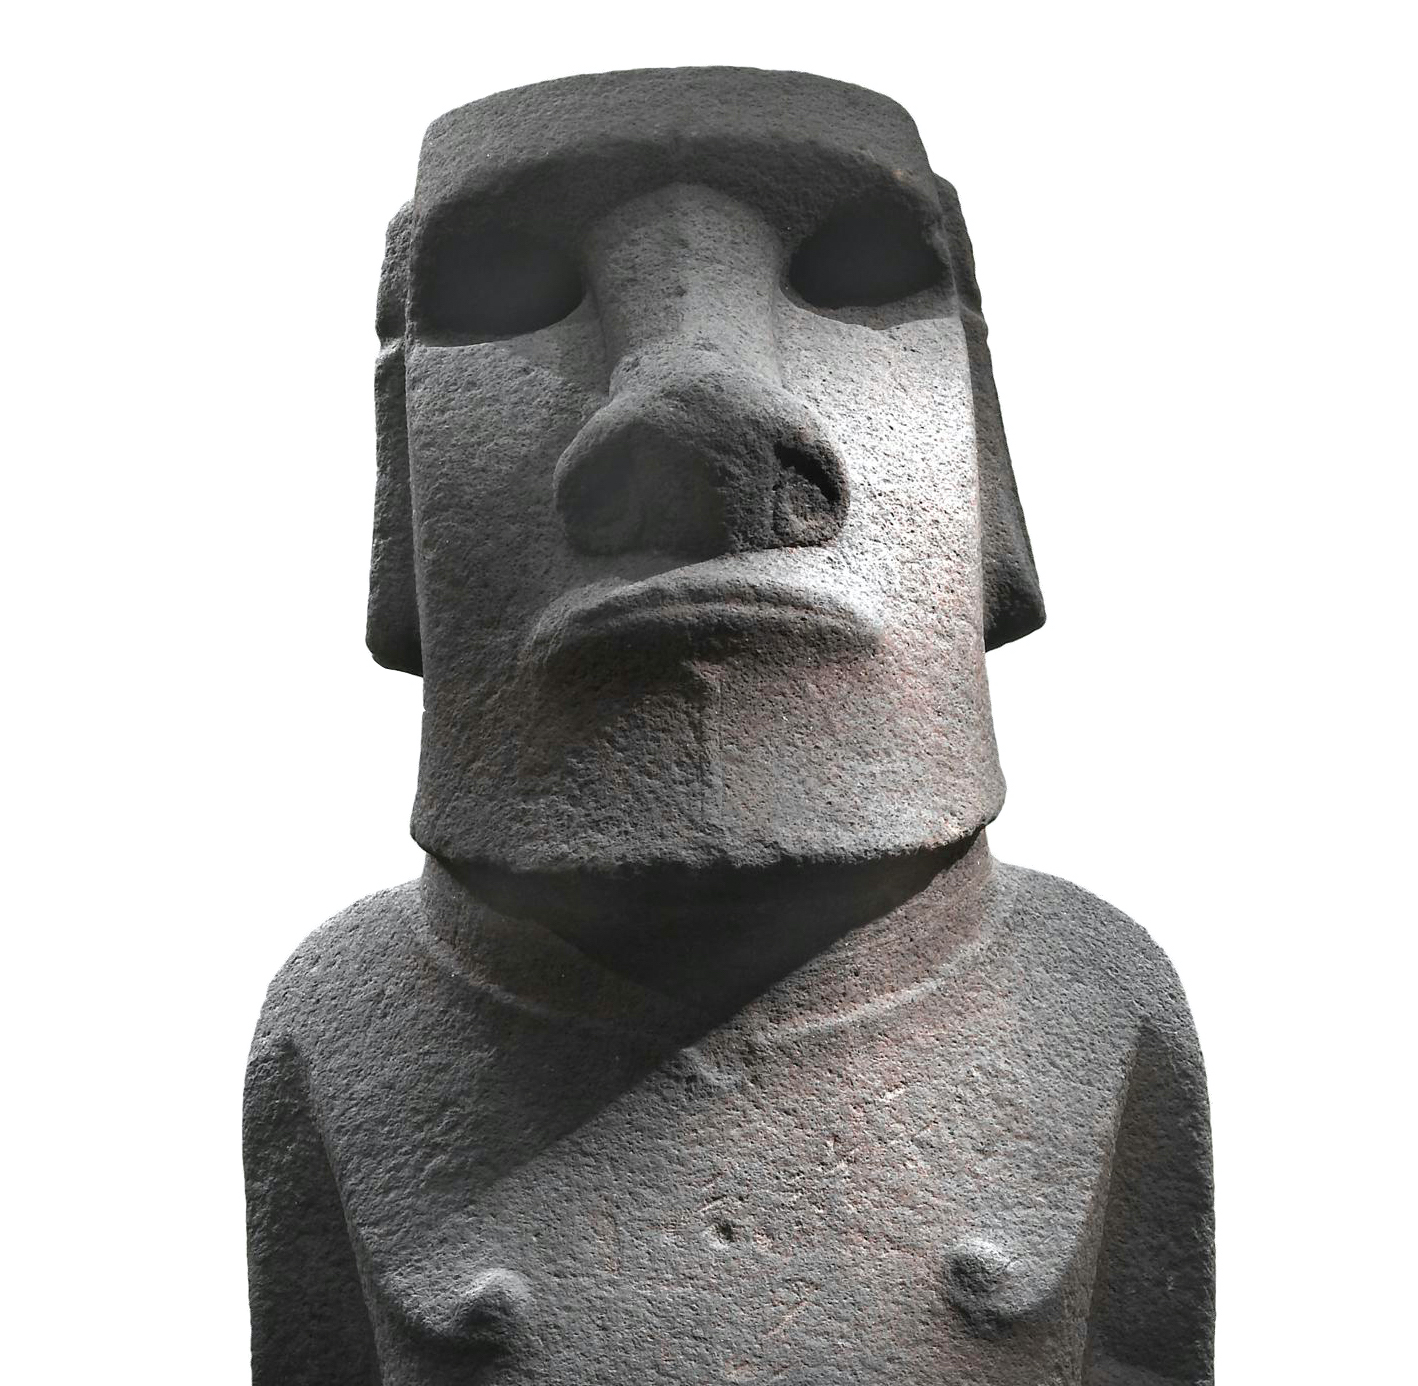 Rapa Nui (Easter Island) Moai (article)